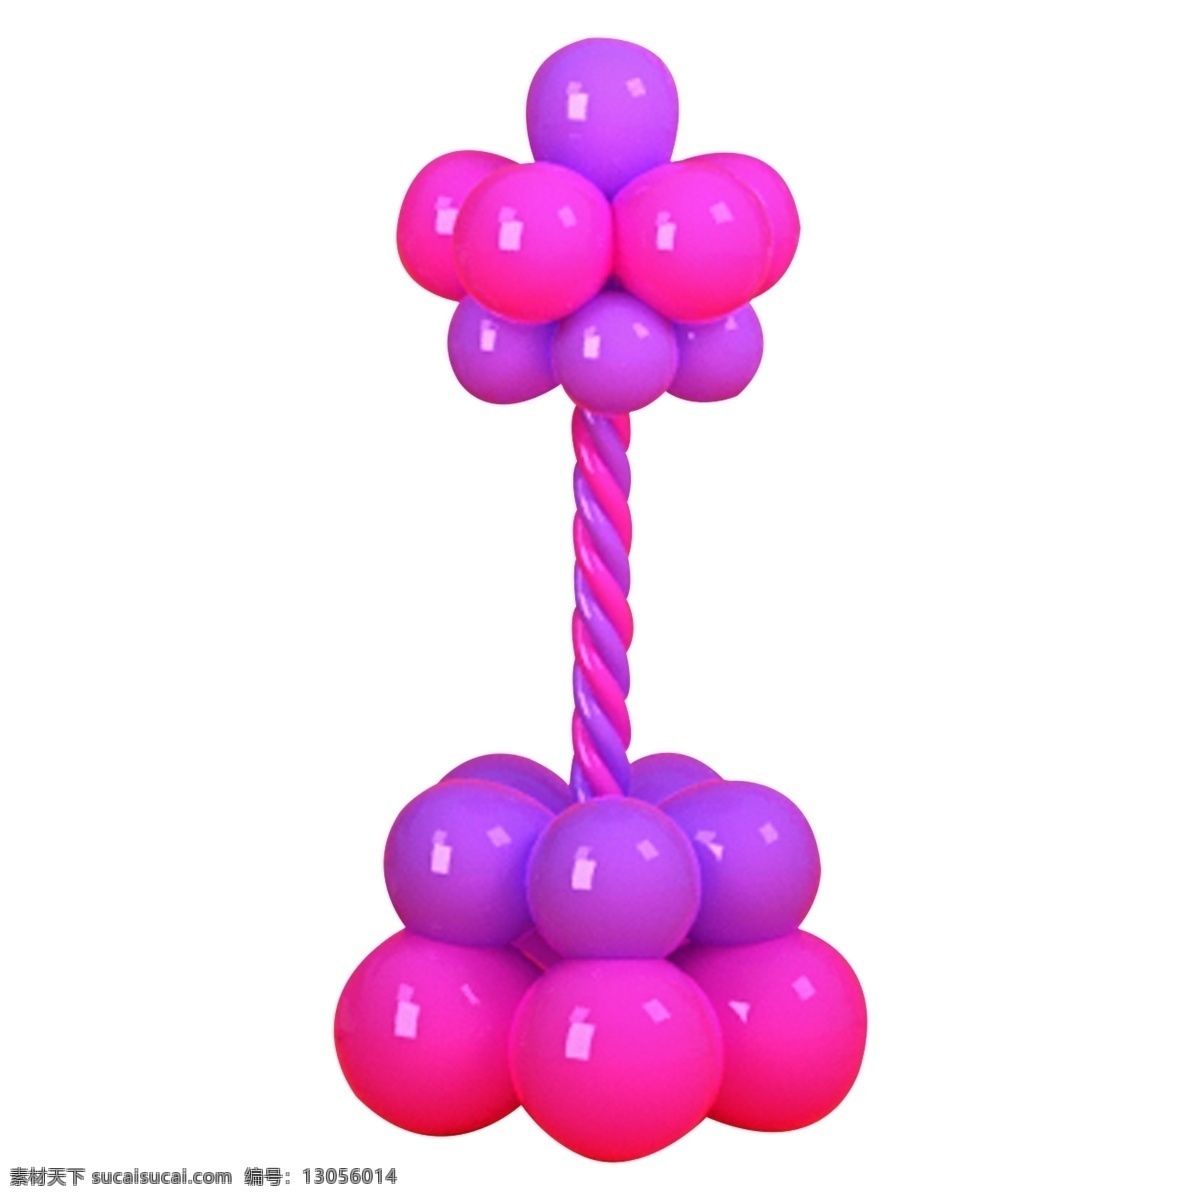 粉色 气球 造型 气球造型 店庆气球样式 气球编花 气球组合 房间装饰 粉嫩 公主 梦幻 房间 装饰